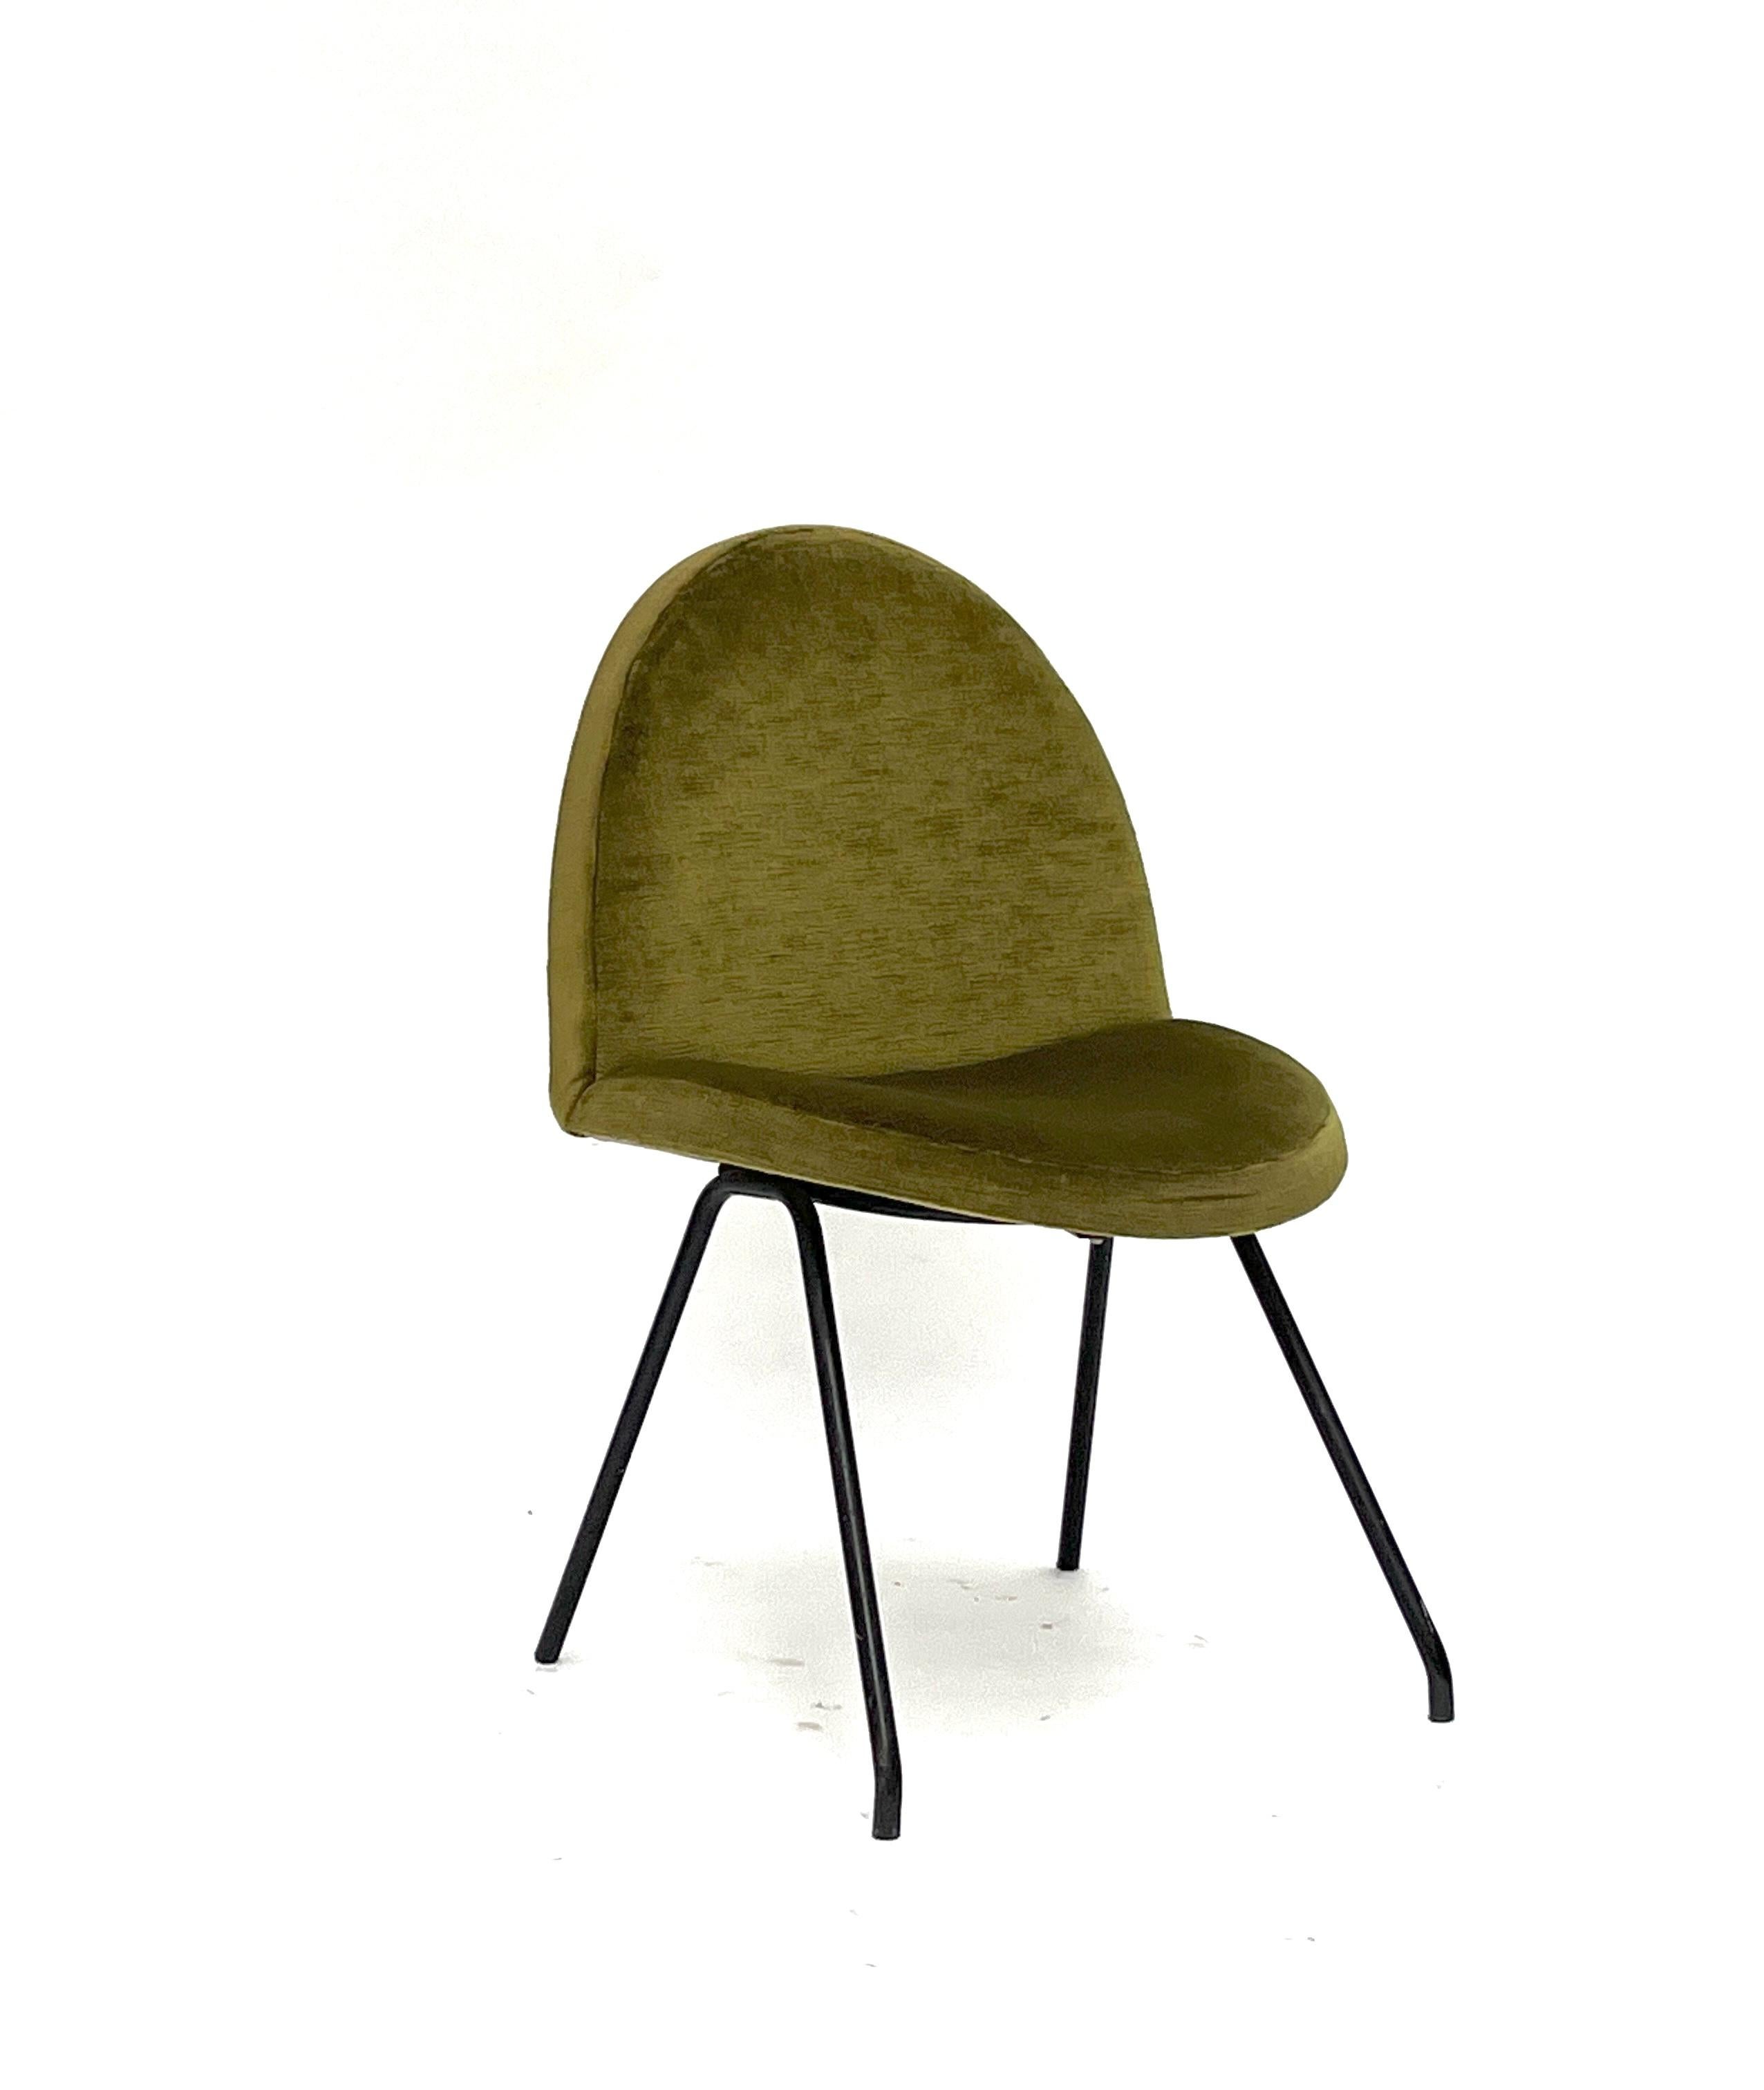 Quatre chaises vertes 771 de Joseph André Motte, Steiner, 1958

Ensemble de 4 chaises modèle 771, il est souvent appelé 